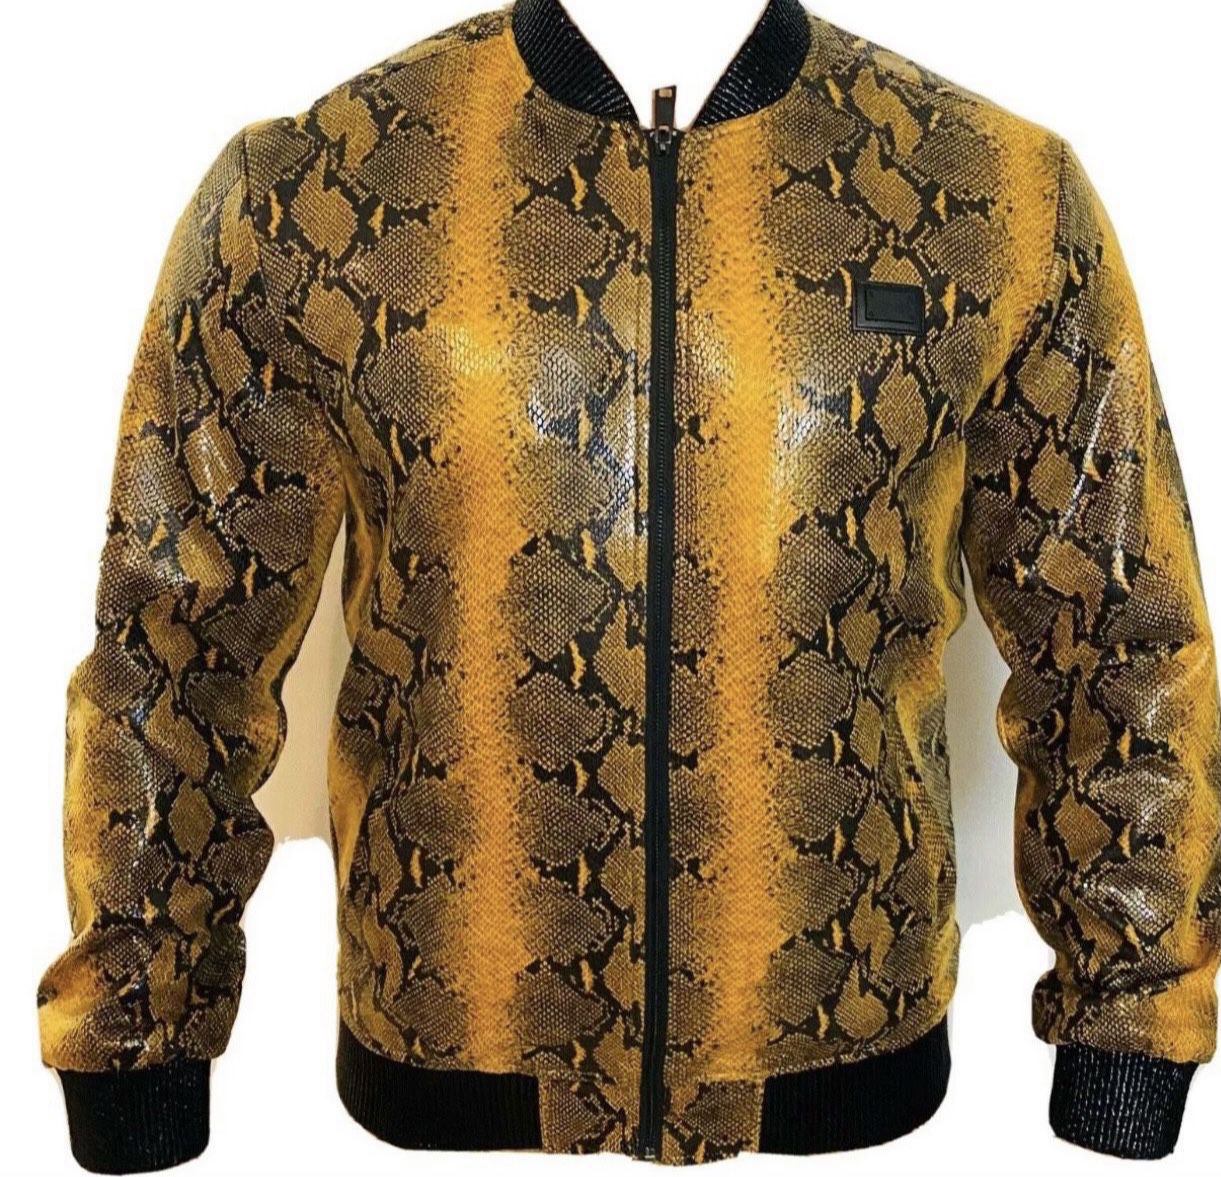 Brand new snake skin Style Unisex bomber jacket for sell